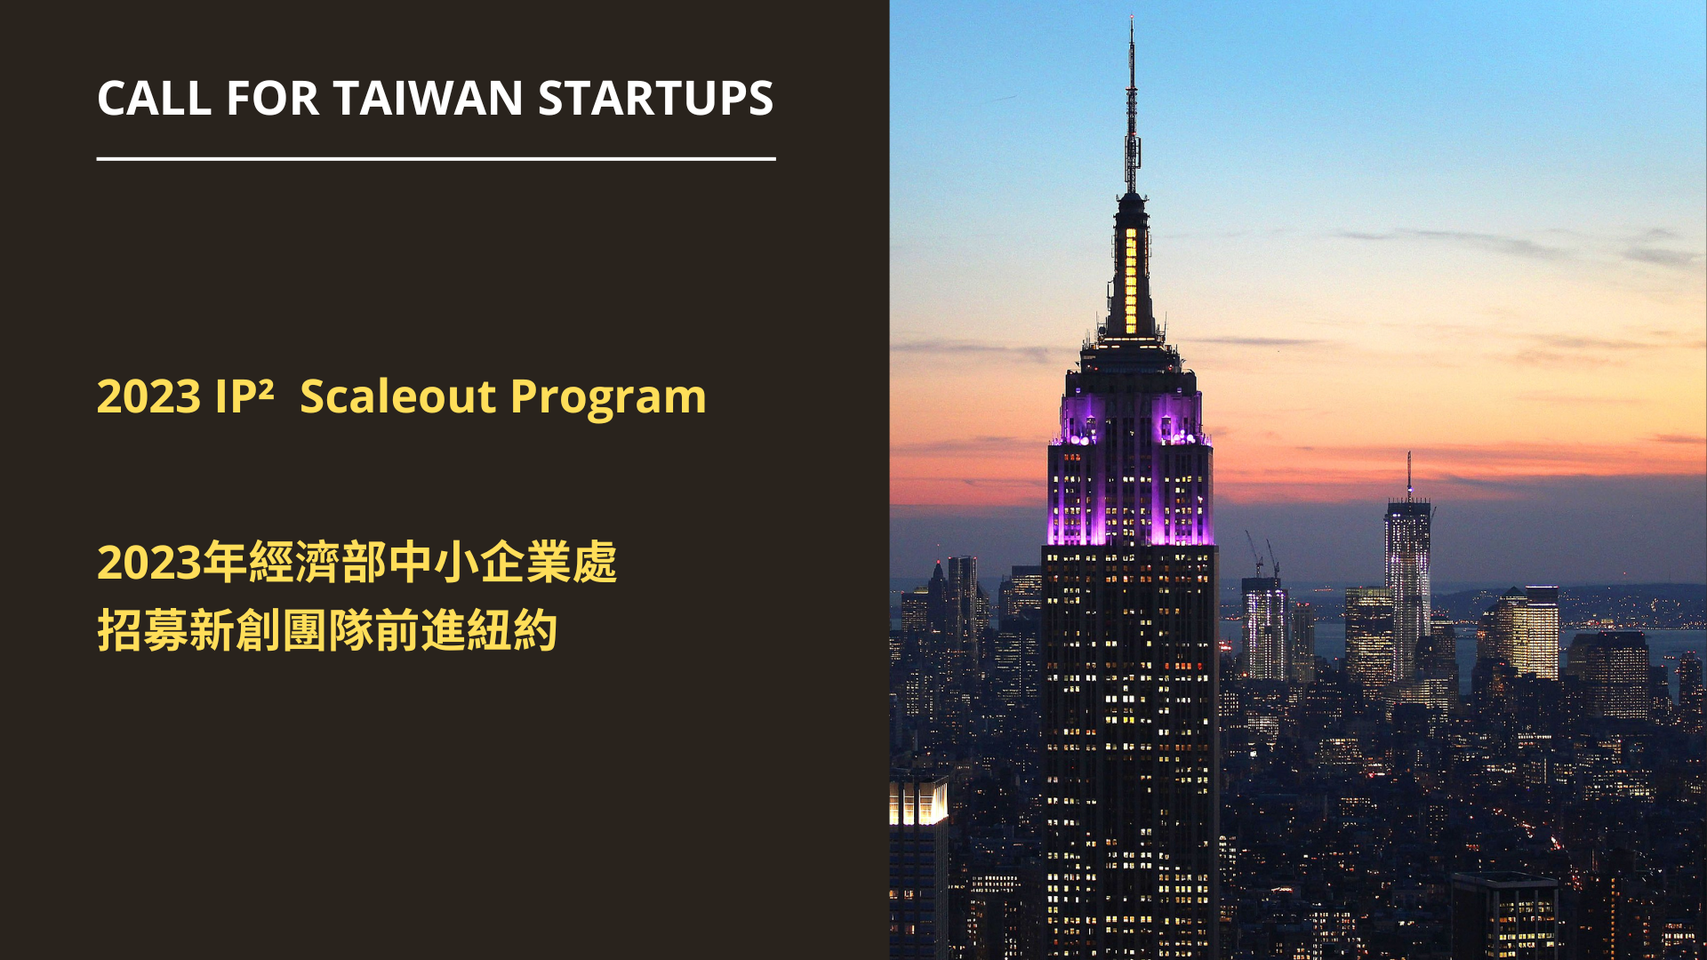 [競賽]IP2 Scale Out Program 2023 Cohort 經濟部中小企業處招募新創團隊前進紐約